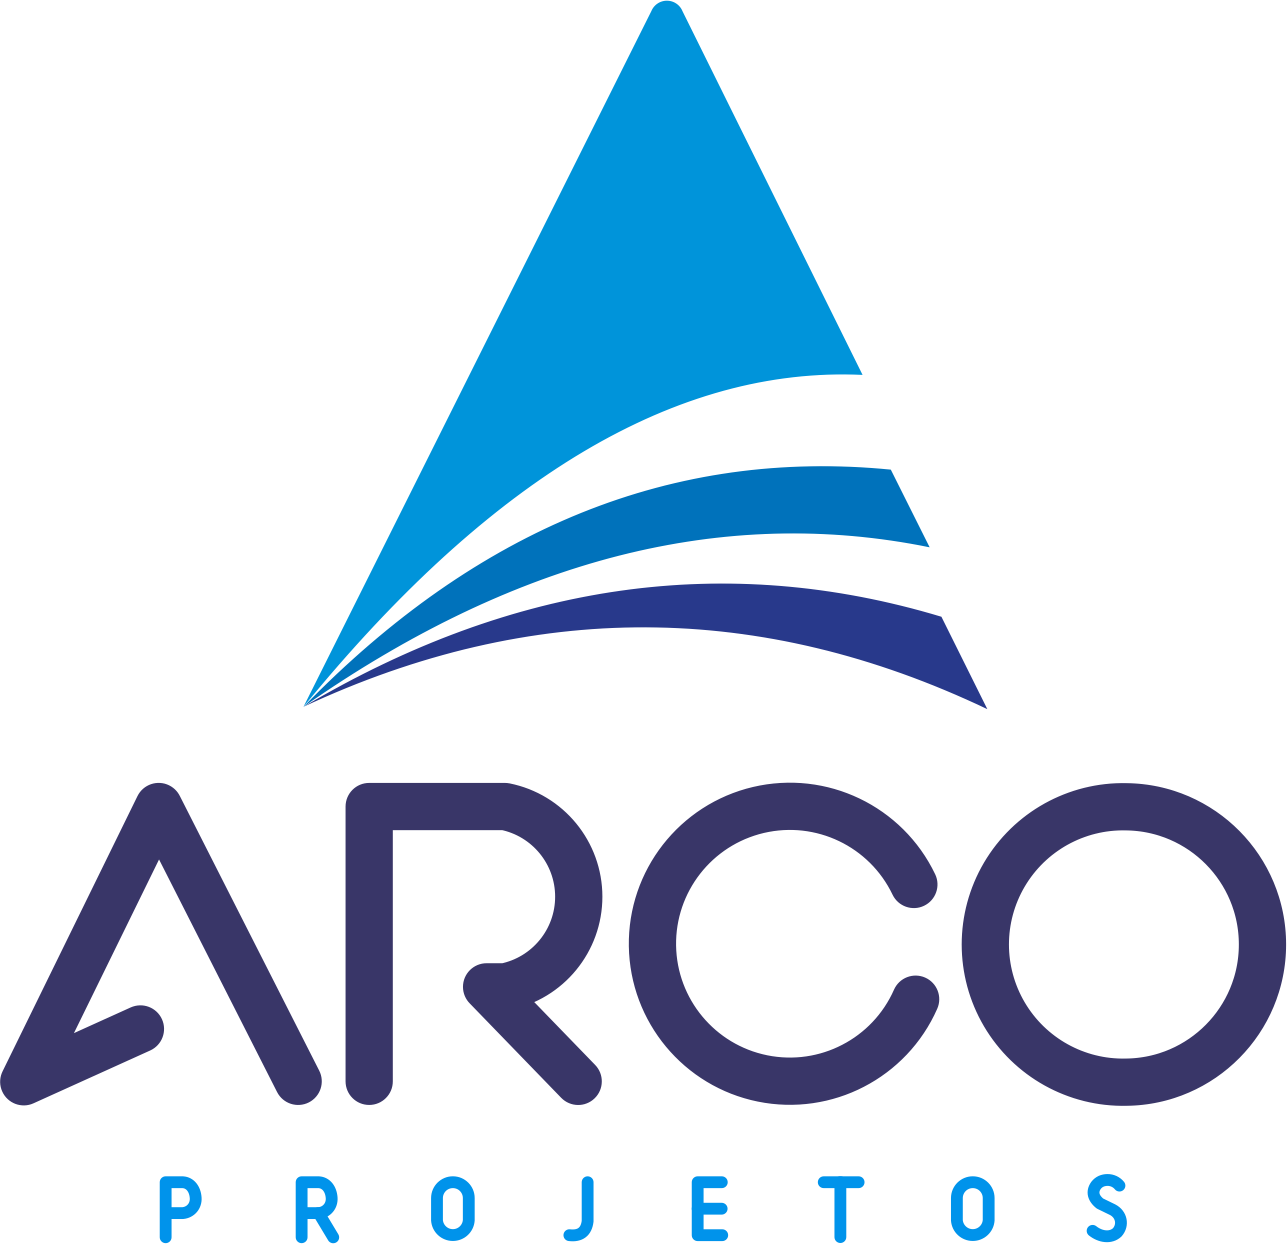 ARCO PROJETOS - Arquitetos - Artigos - Salvador, BA